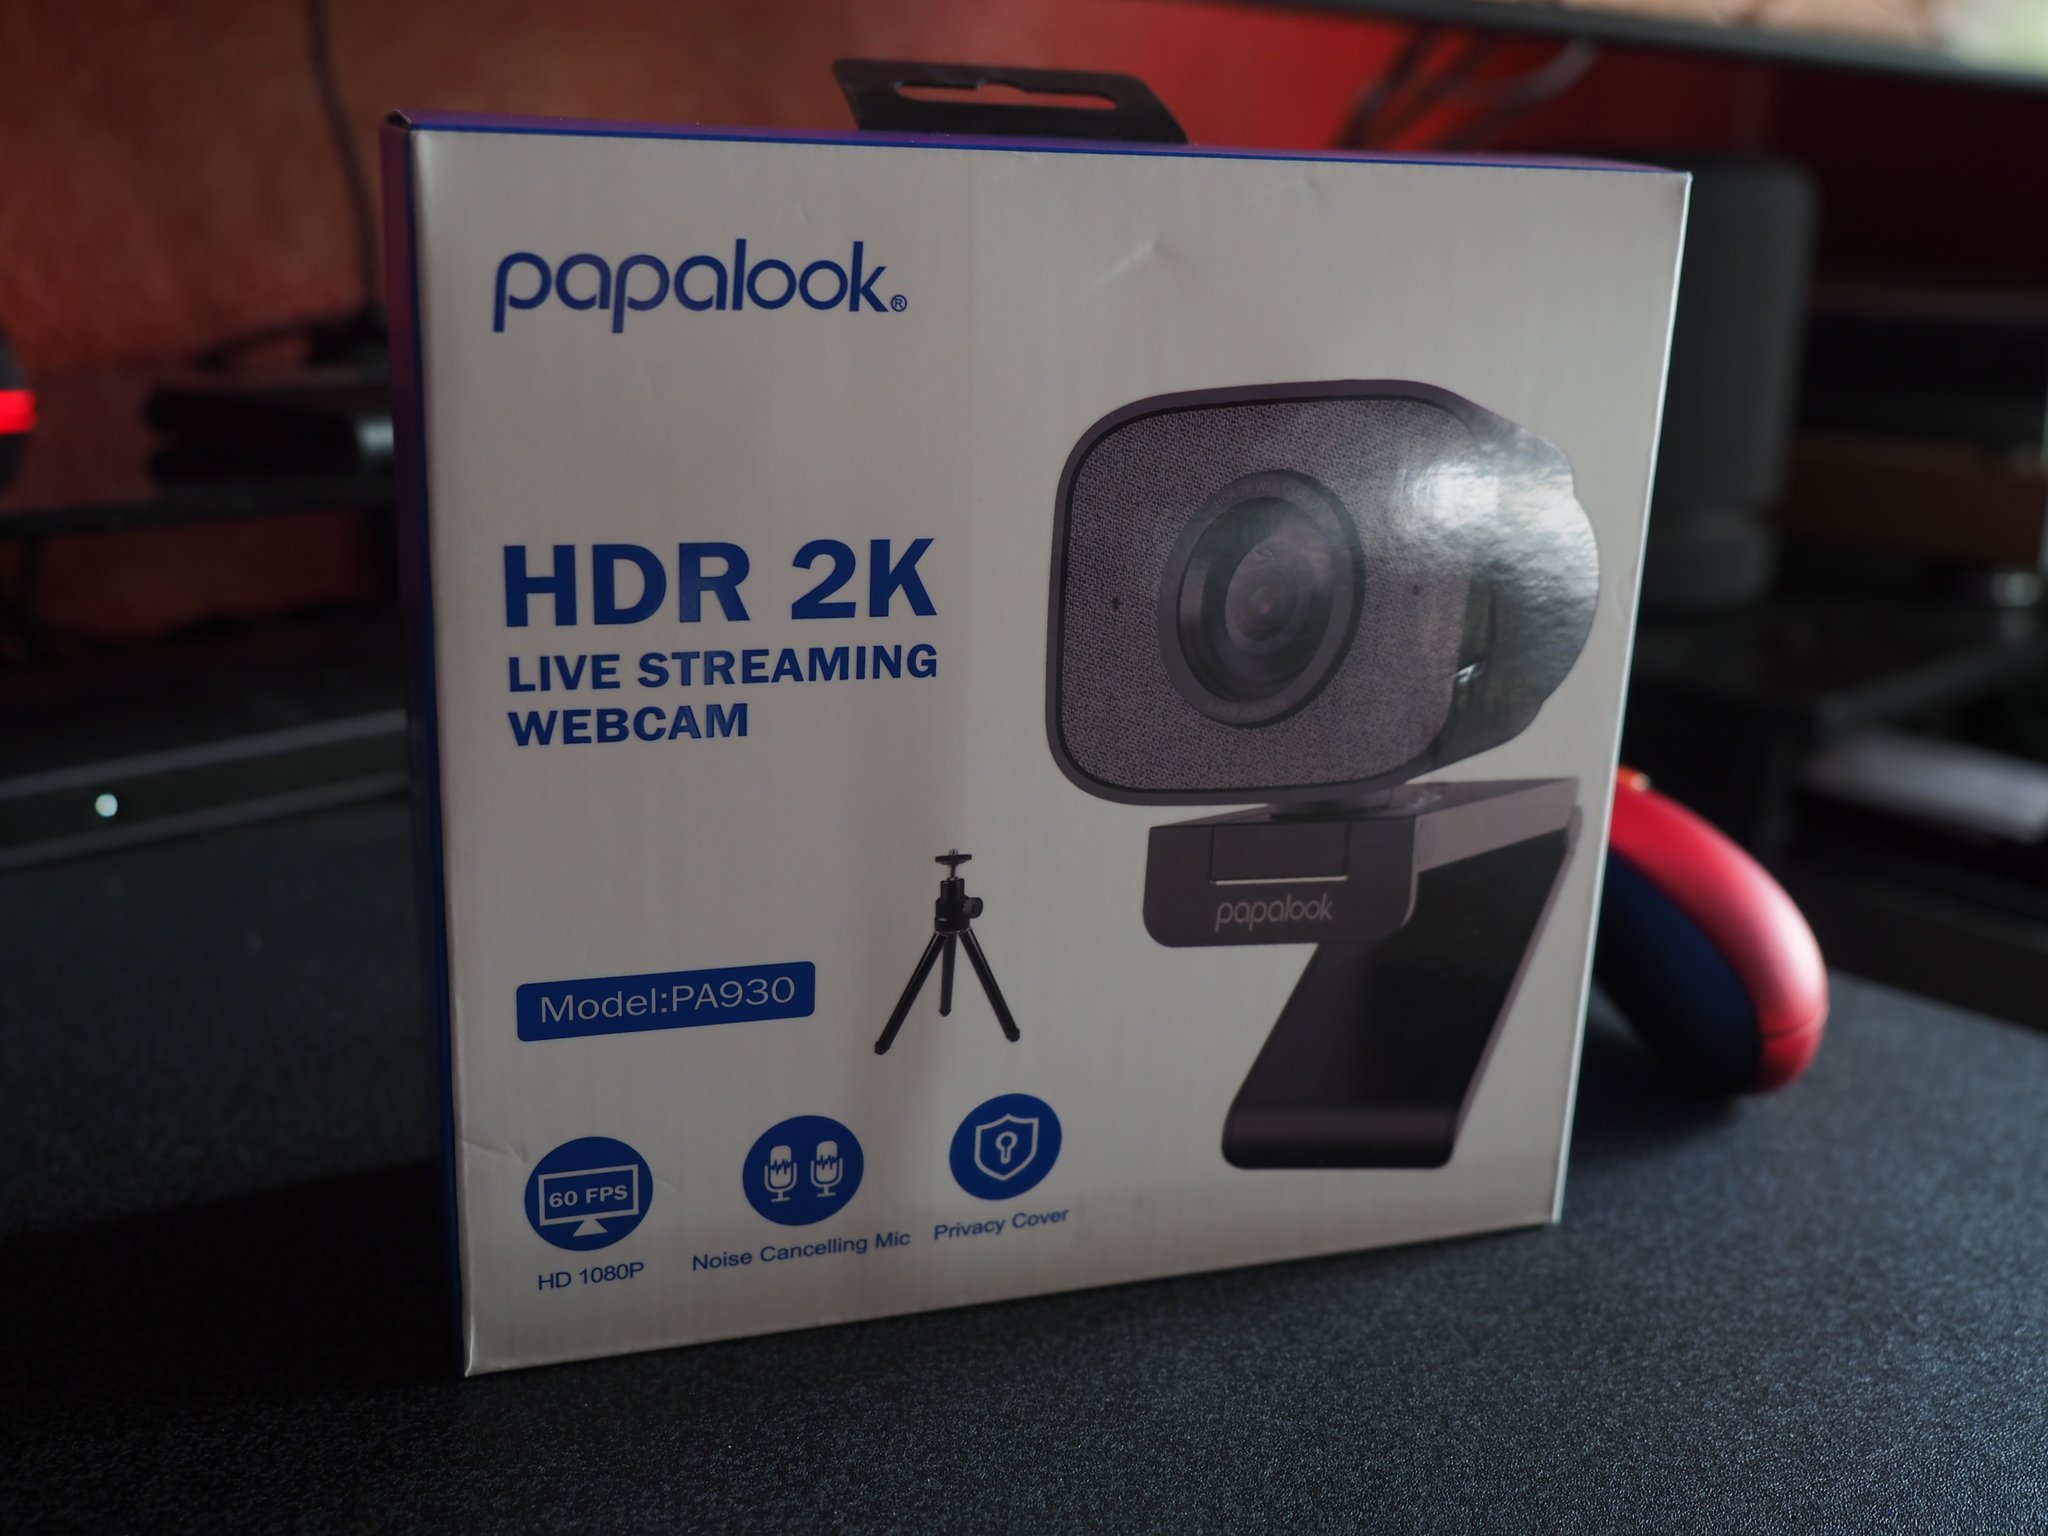 Papalook Hdr 2k Streaming Webcam